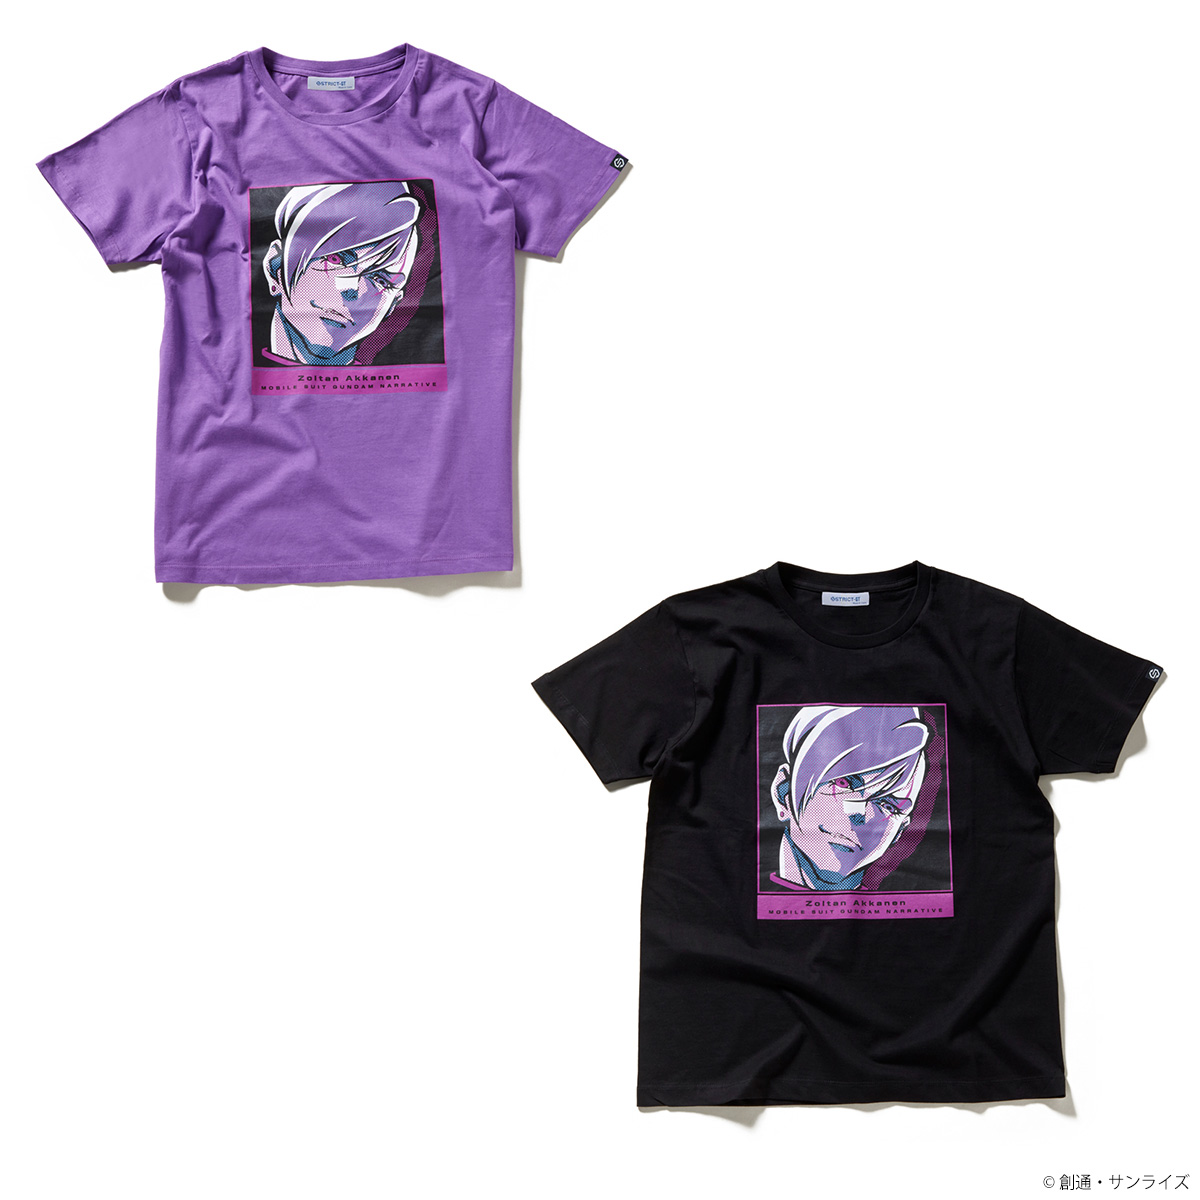 『機動戦士ガンダムNT』POP ART Tシャツ ゾルタン・アッカネン